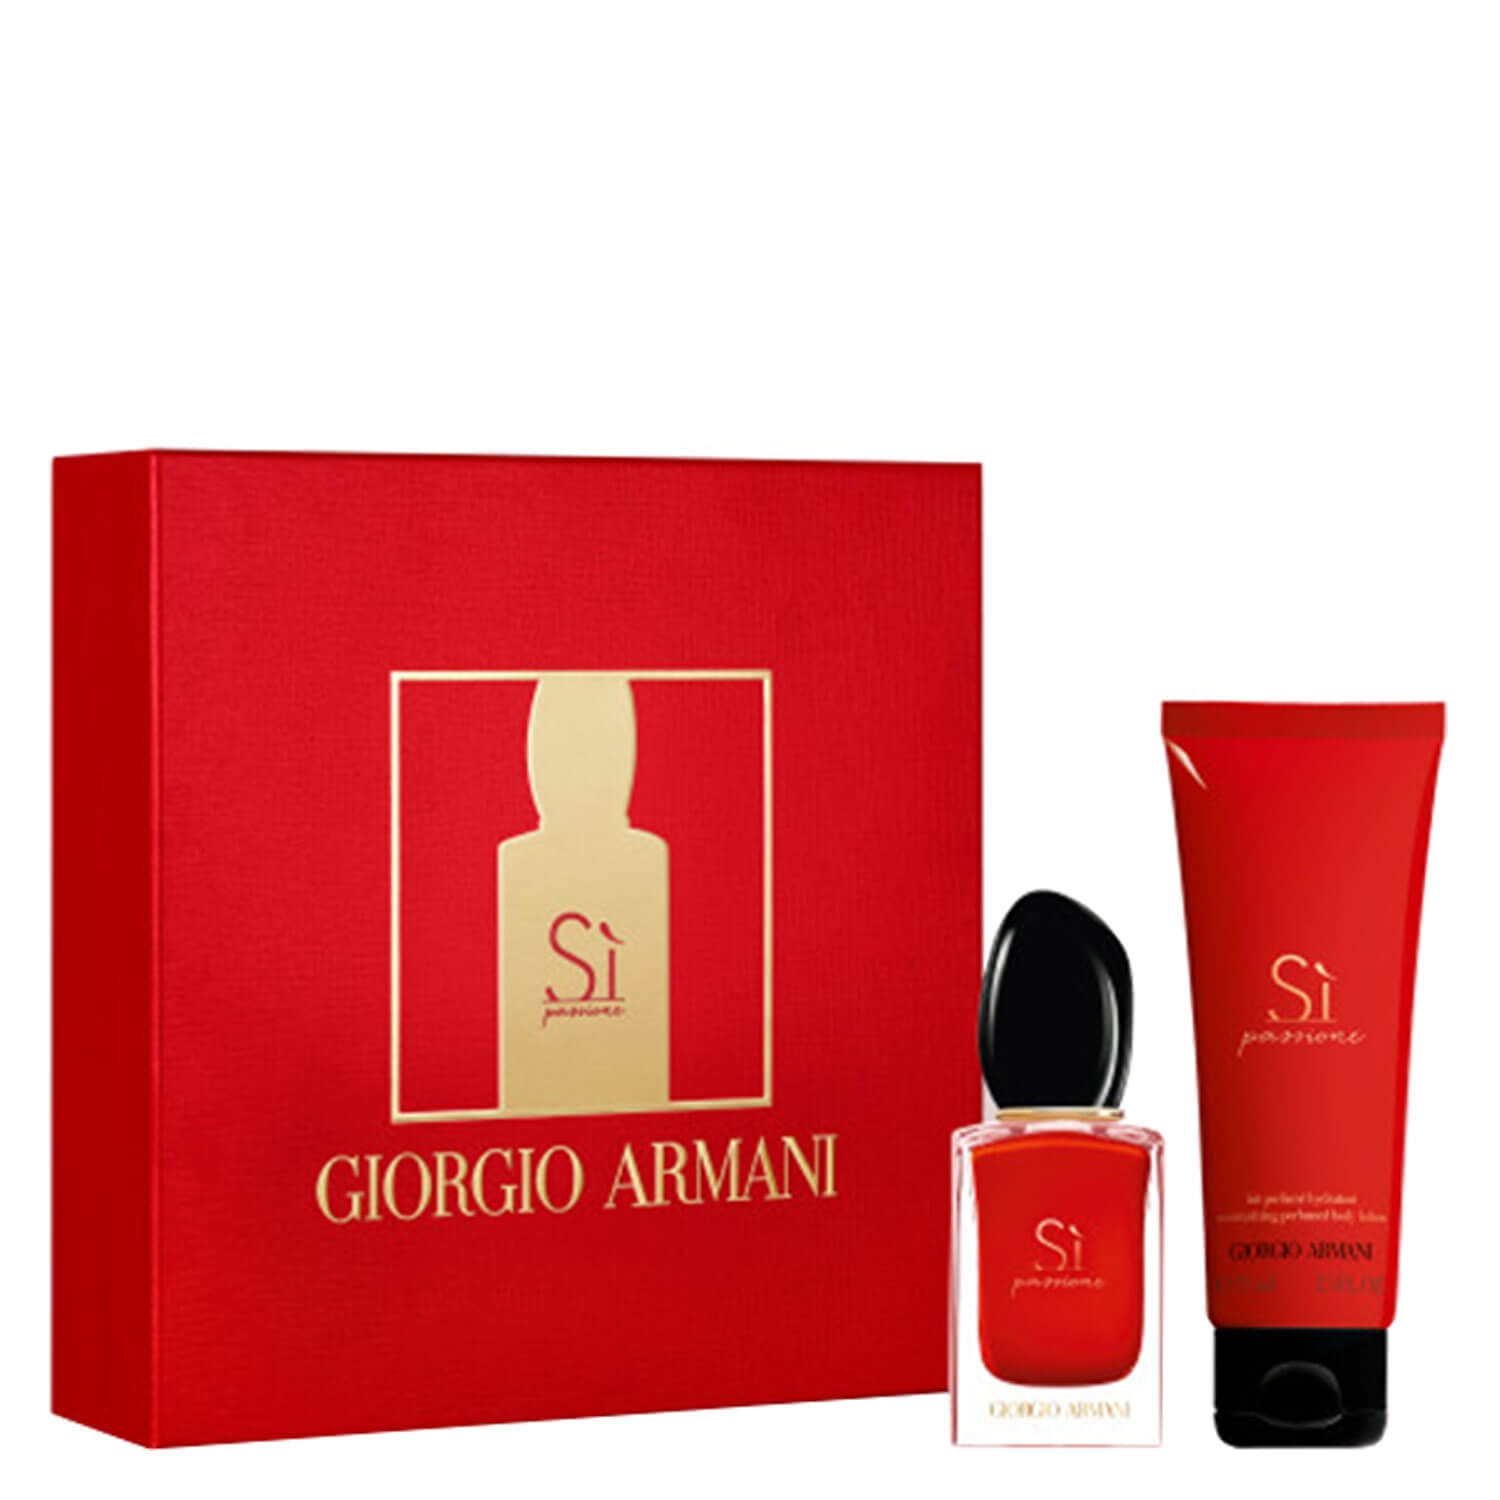 Product image from Sì - Passione Eau de Parfum Set